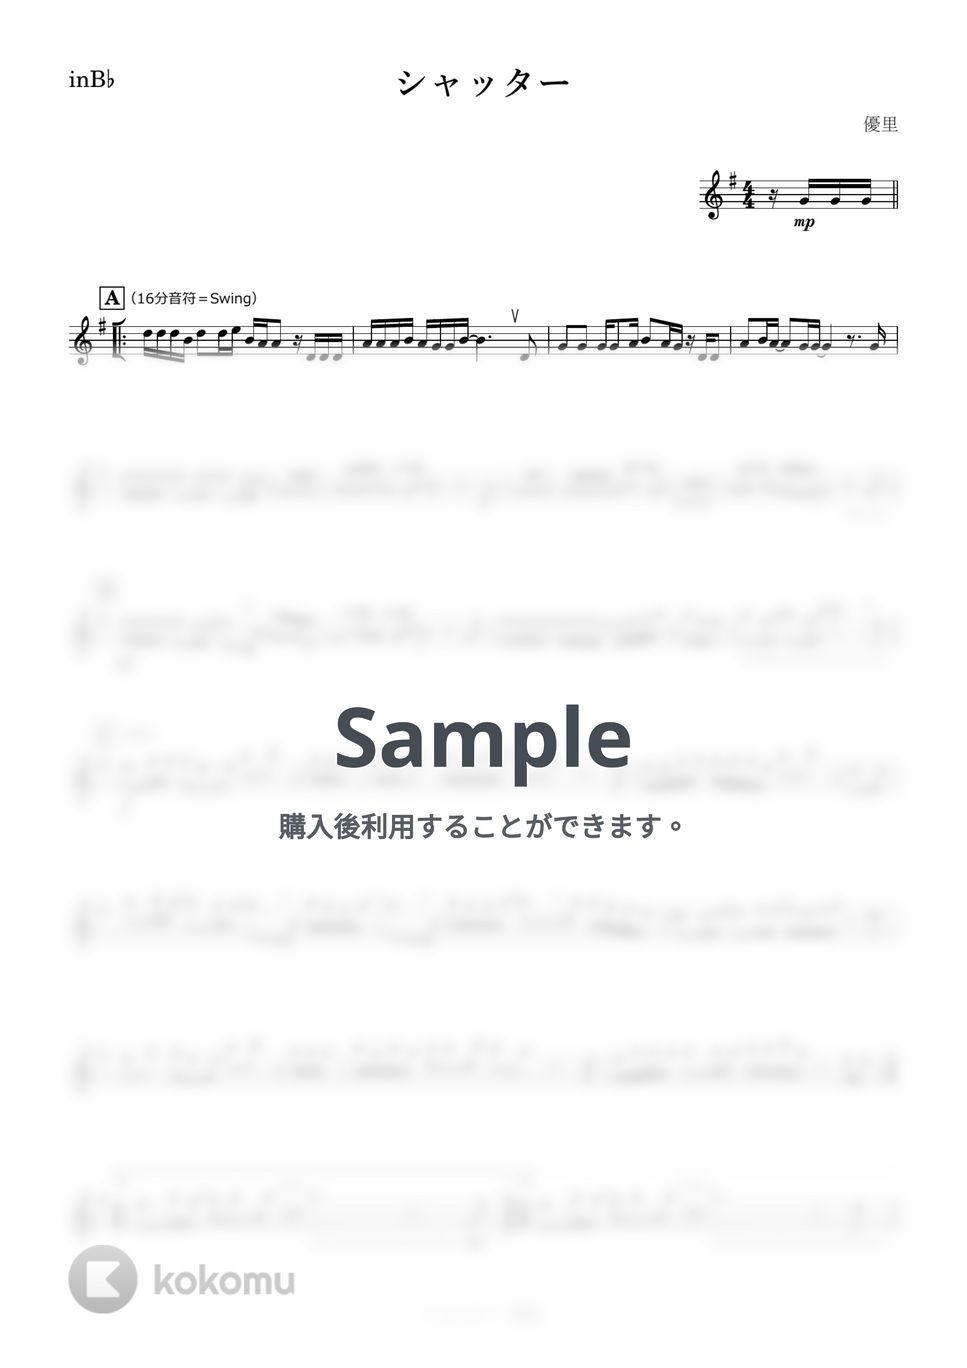 優里 - シャッター (B♭) by kanamusic